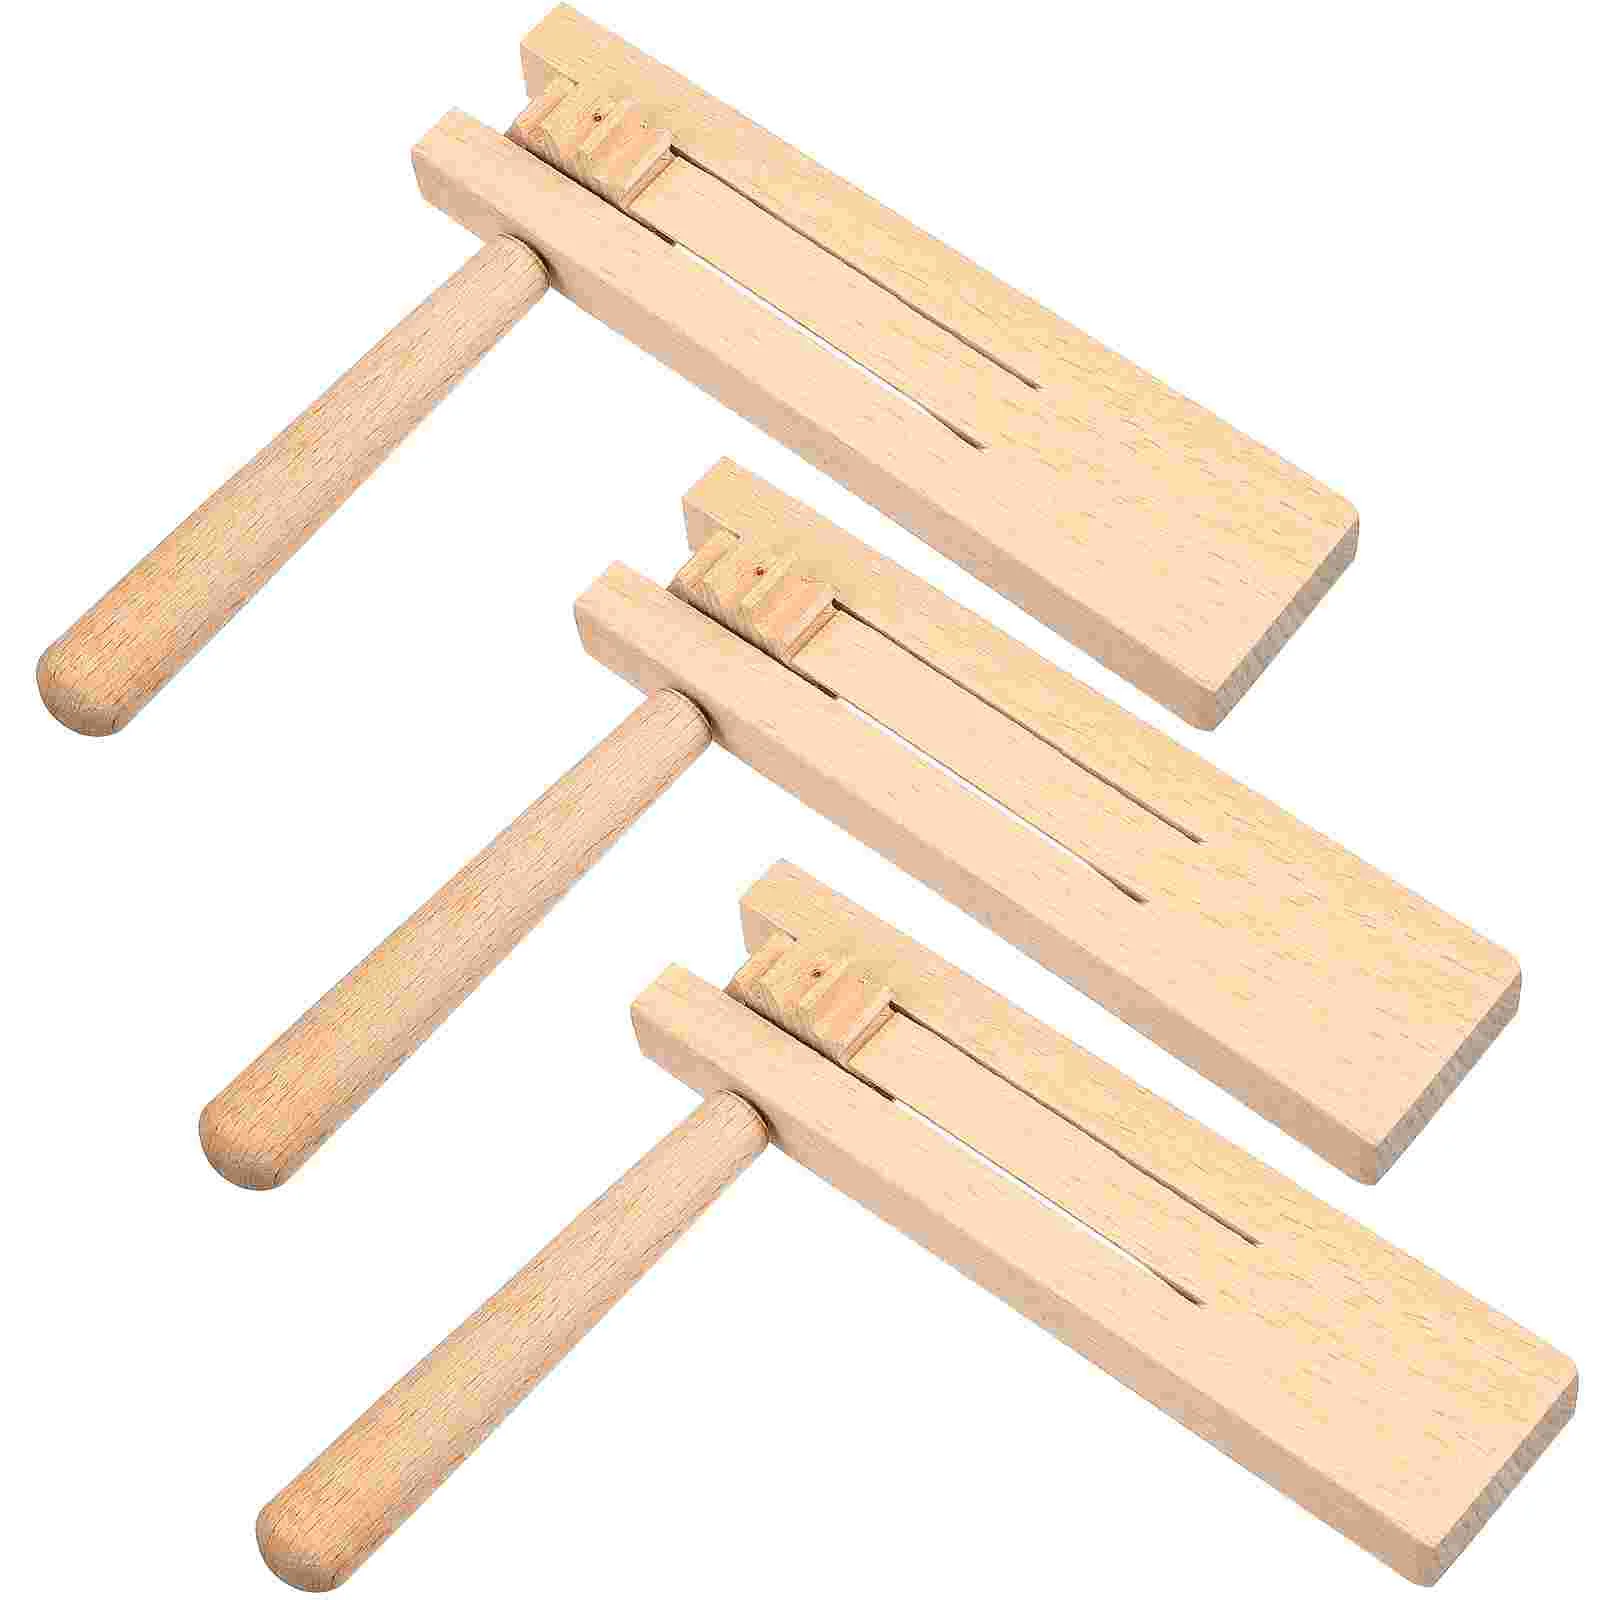 

Orff Инструмент Деревянный шумогенератор Matraca игрушка трещотка игрушки дети звук Matracas